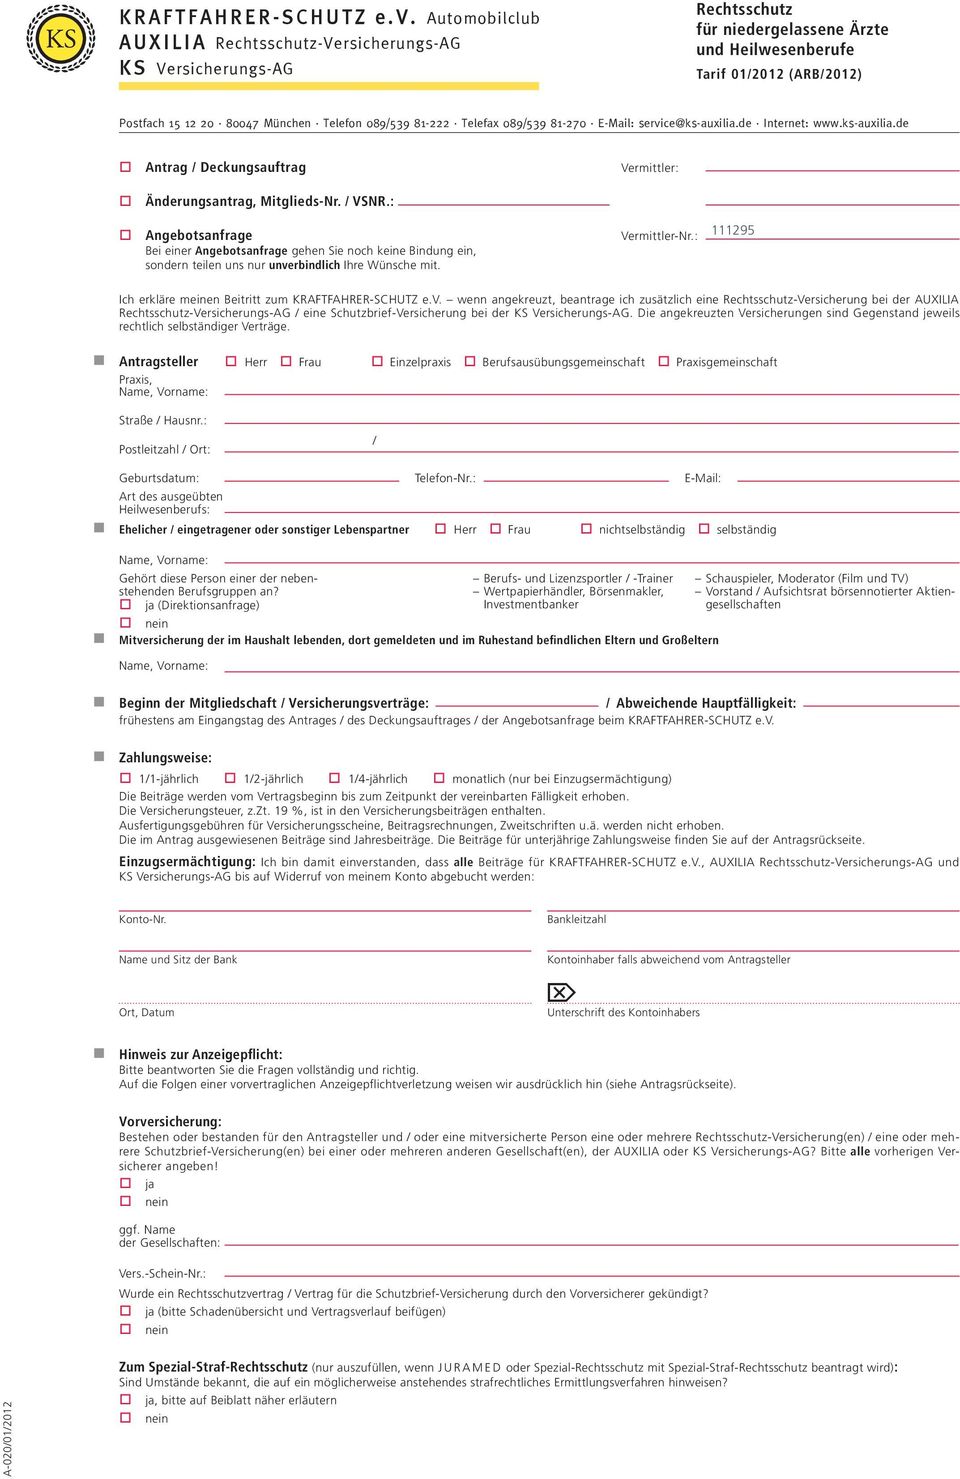 089539 81-222 Telefax 089539 81-270 E-Mail: service@ks-auxilia.de Internet: www.ks-auxilia.de Antrag Deckungsauftrag Vermittler: Änderungsantrag, Mitglieds-Nr. VSNR.: Angebotsanfrage Vermittler-Nr.